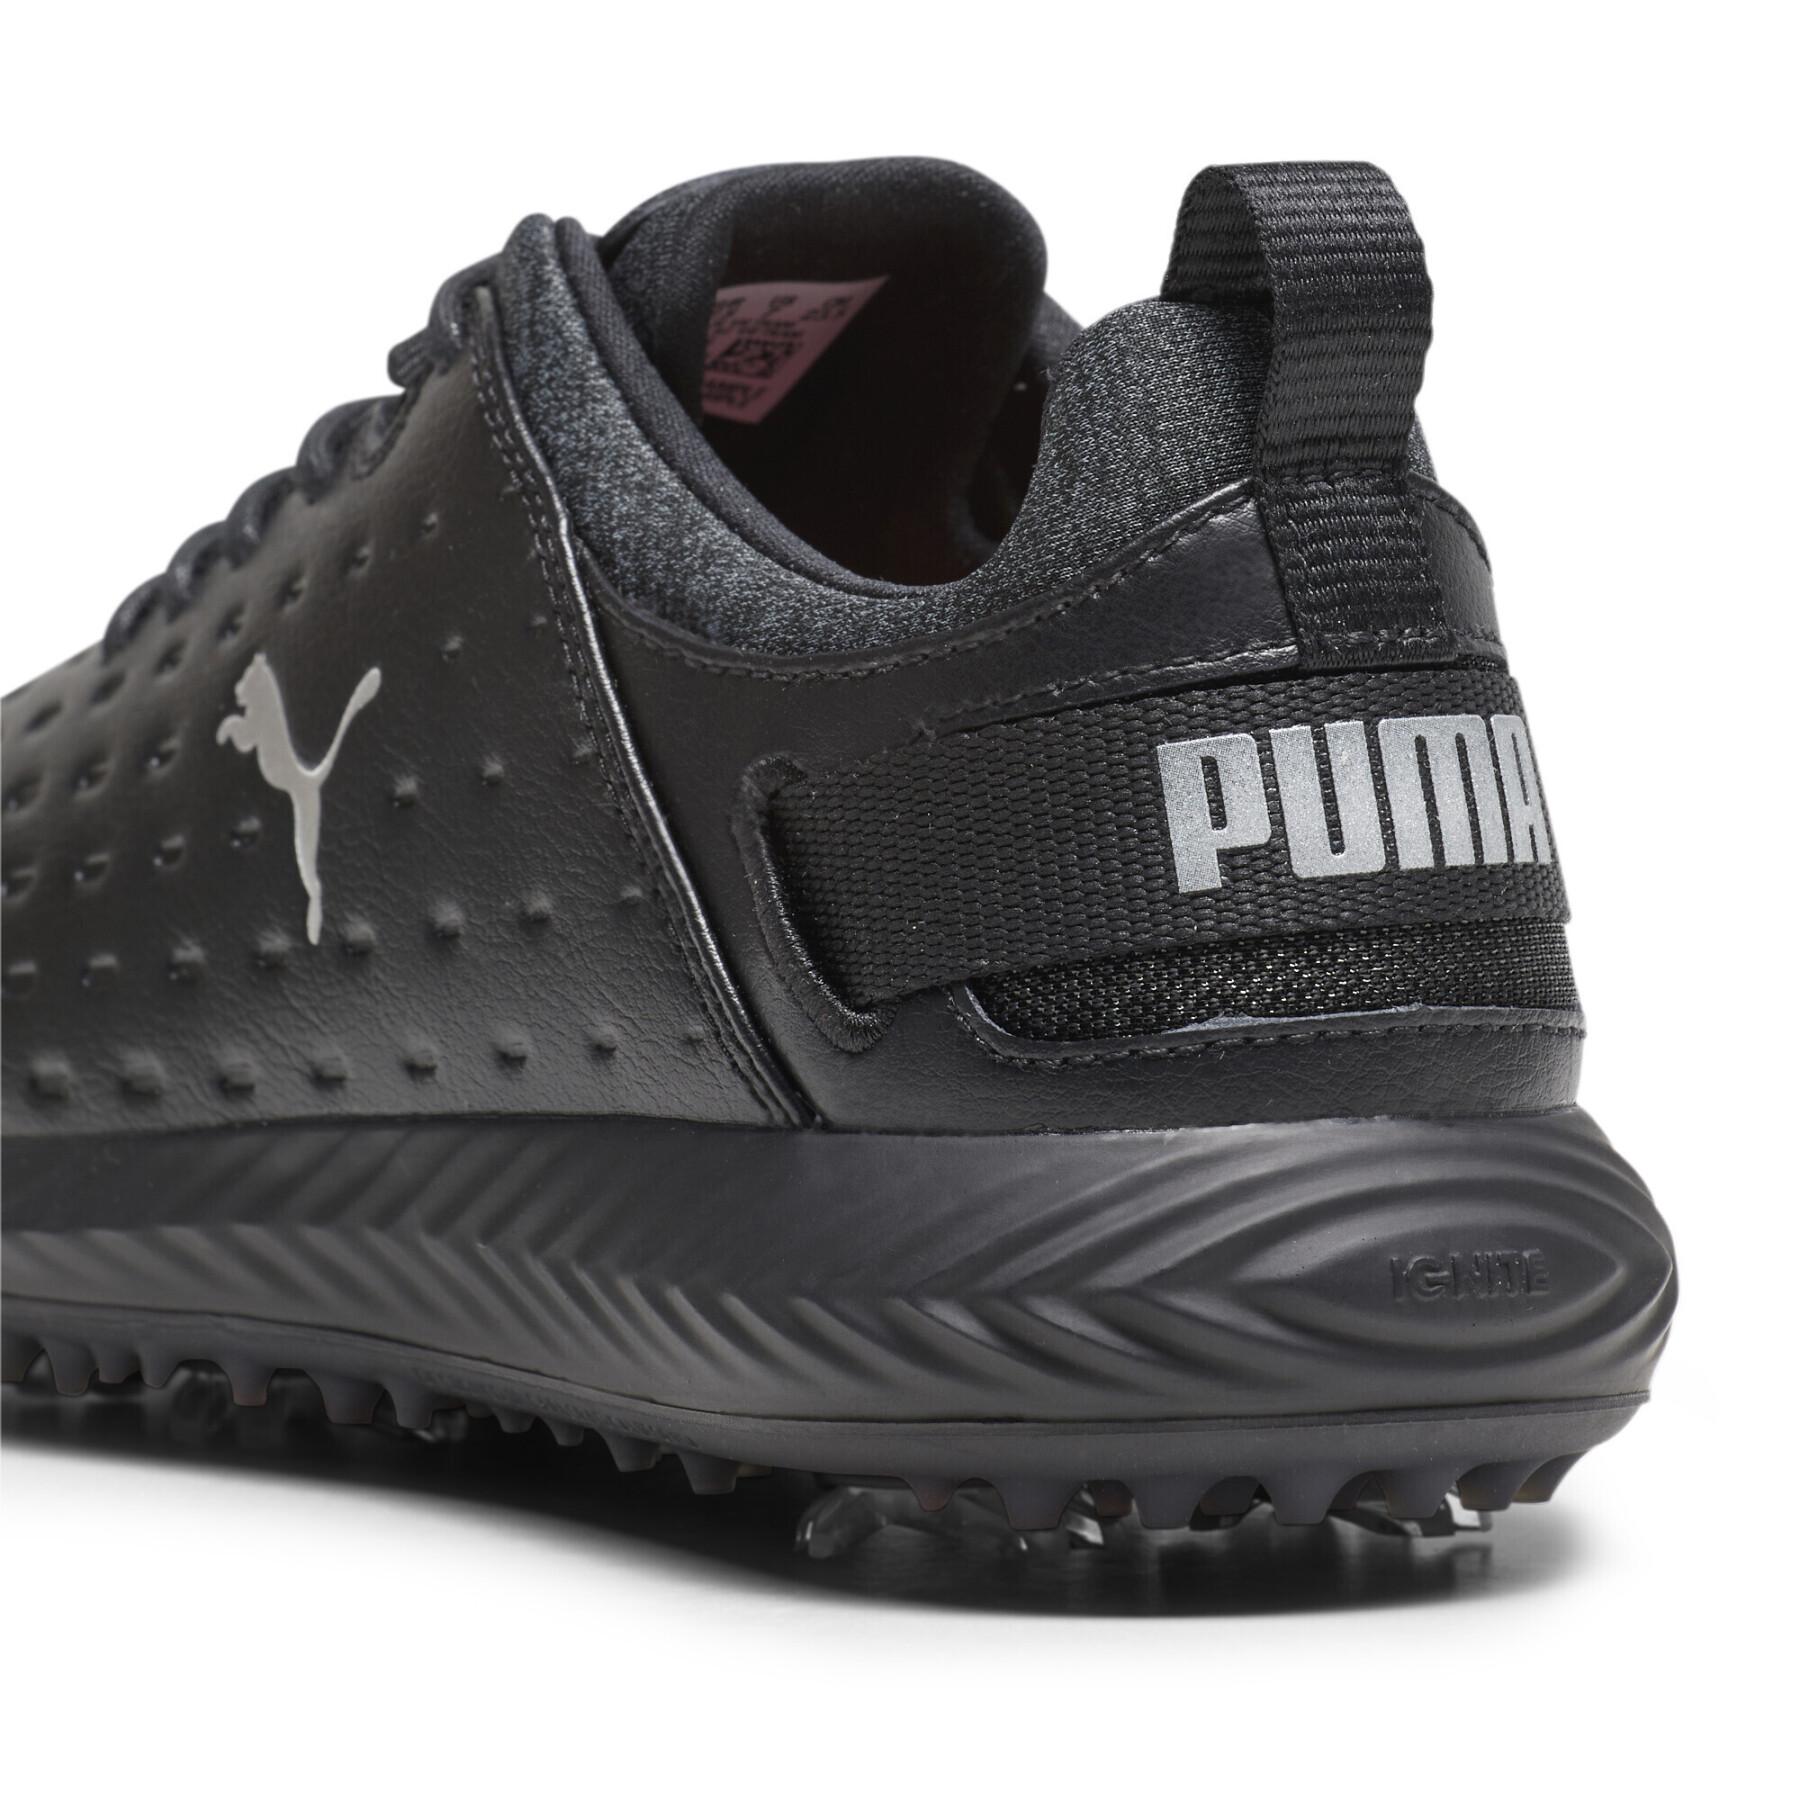 Chaussures de golf femme Puma Ignite Blaze Pro